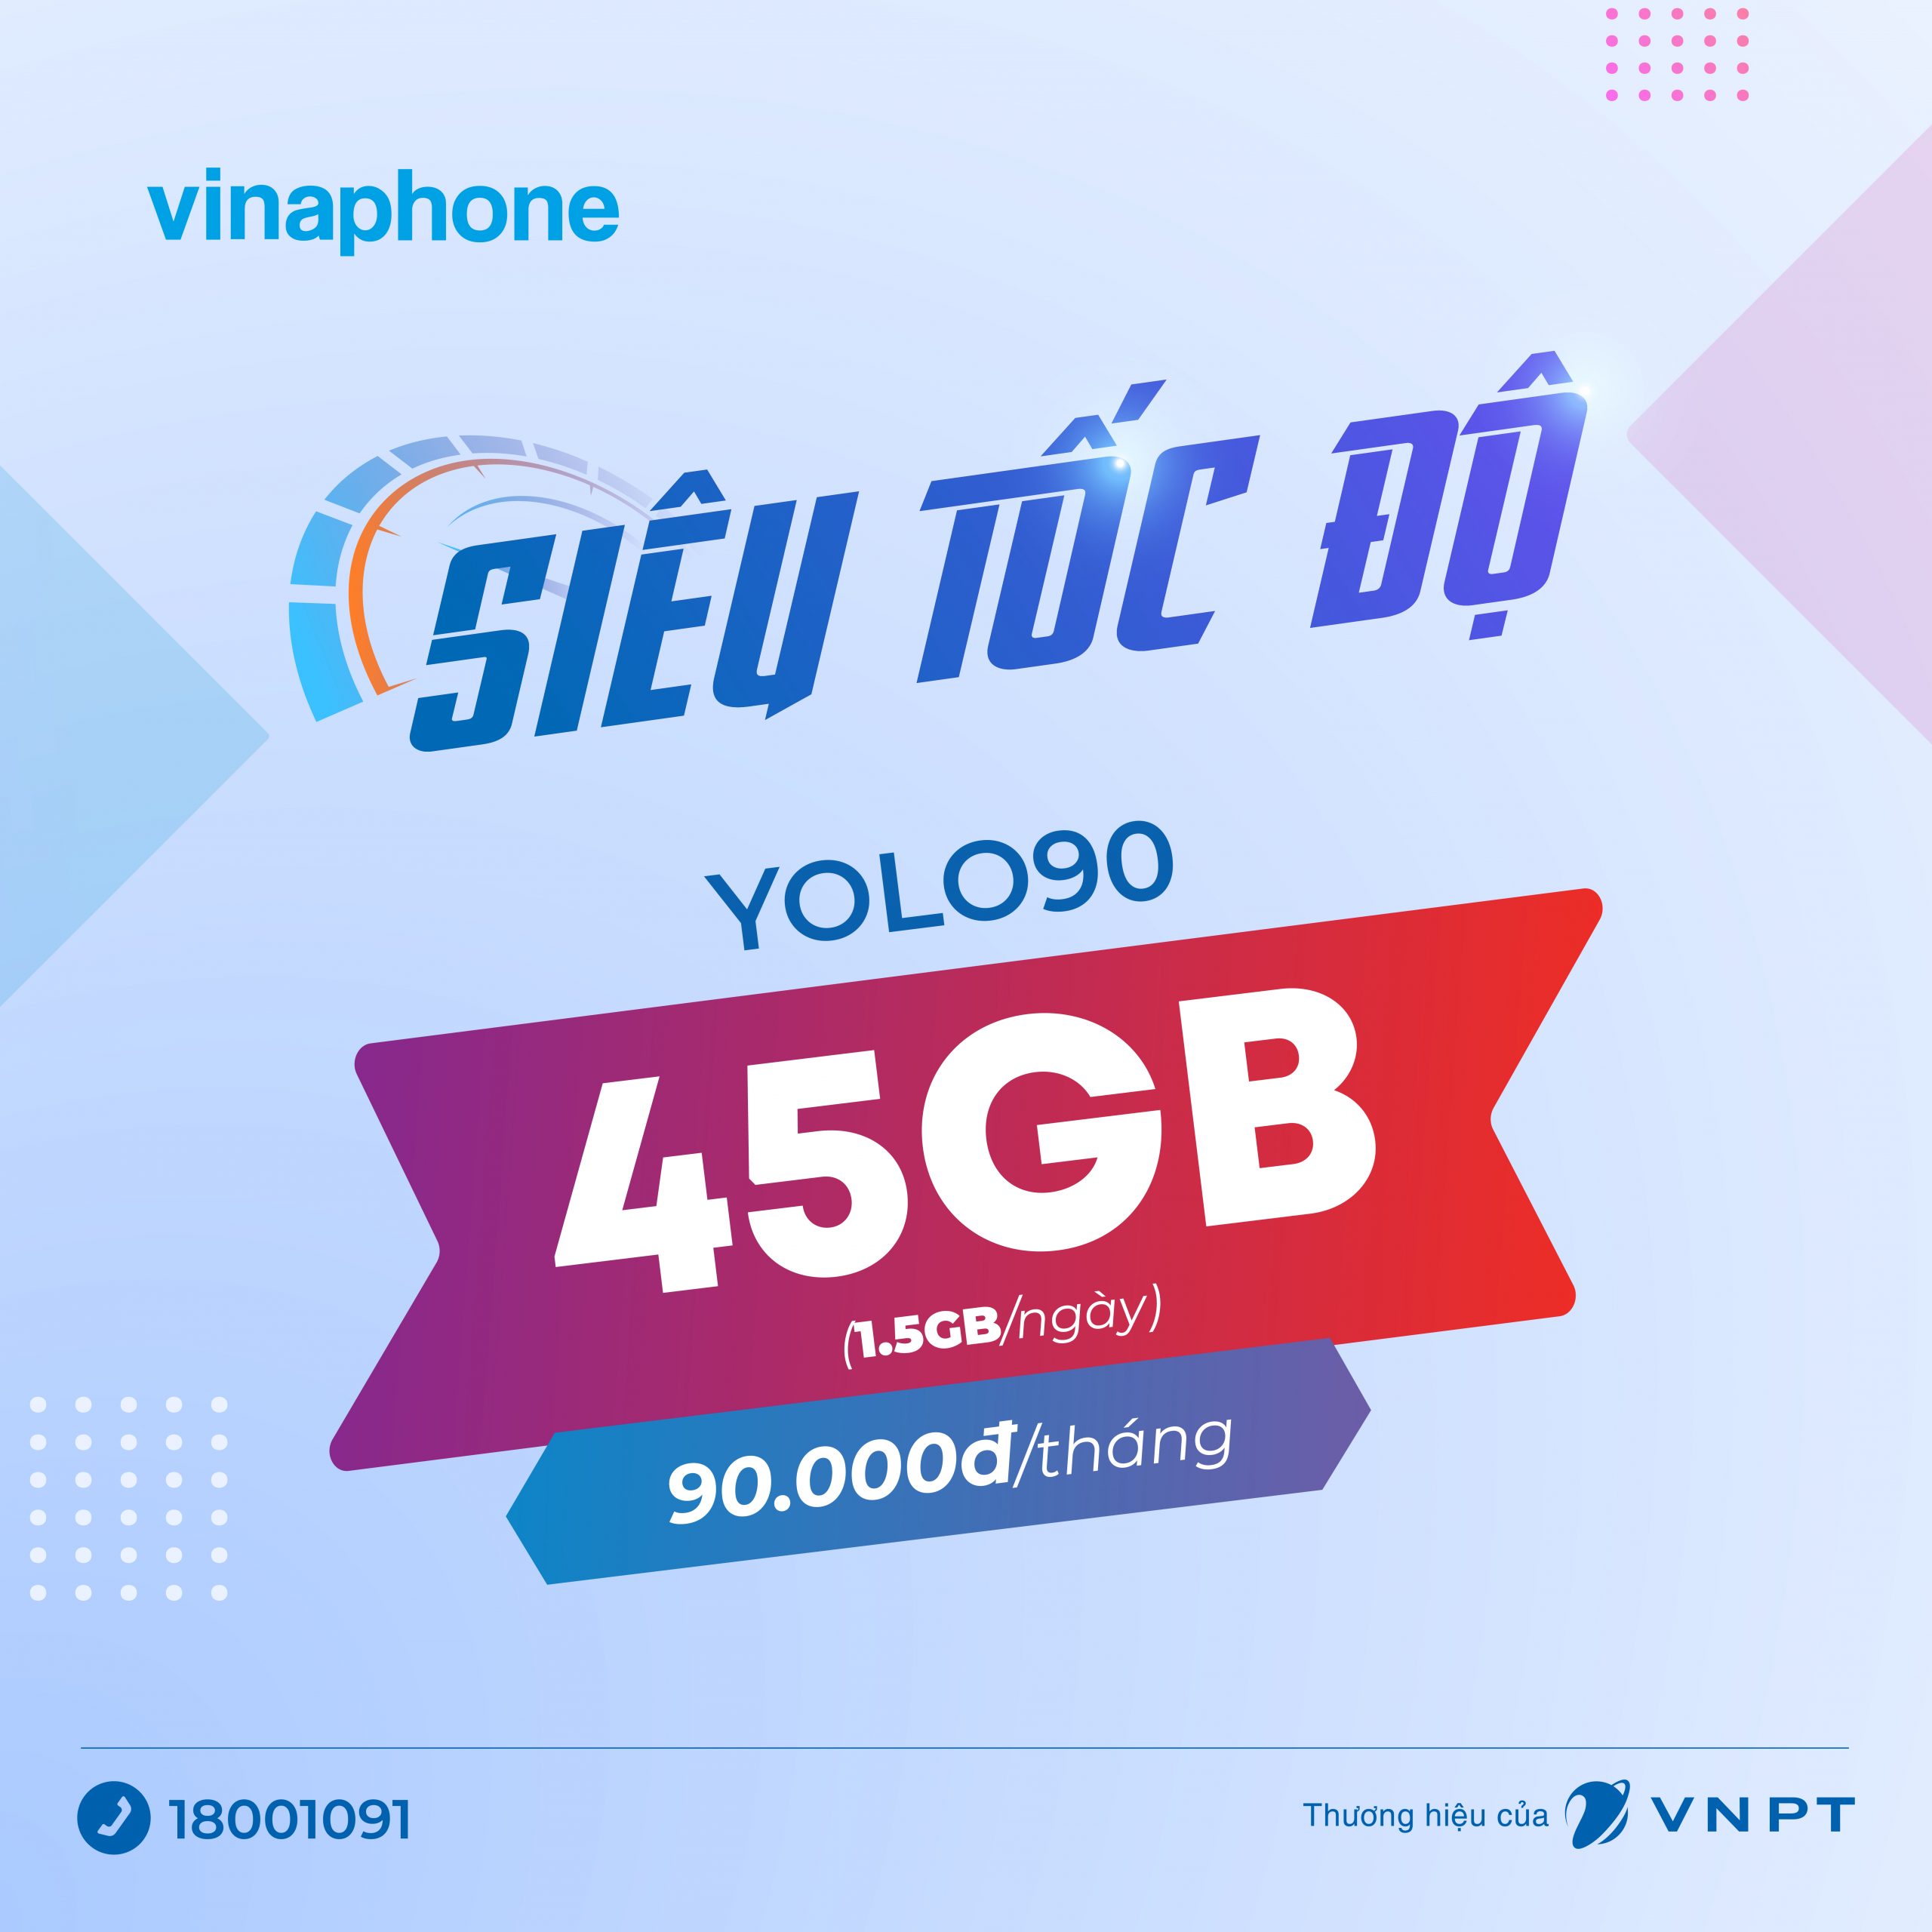 Gói cước di động YOLO 90 của Vinaphone